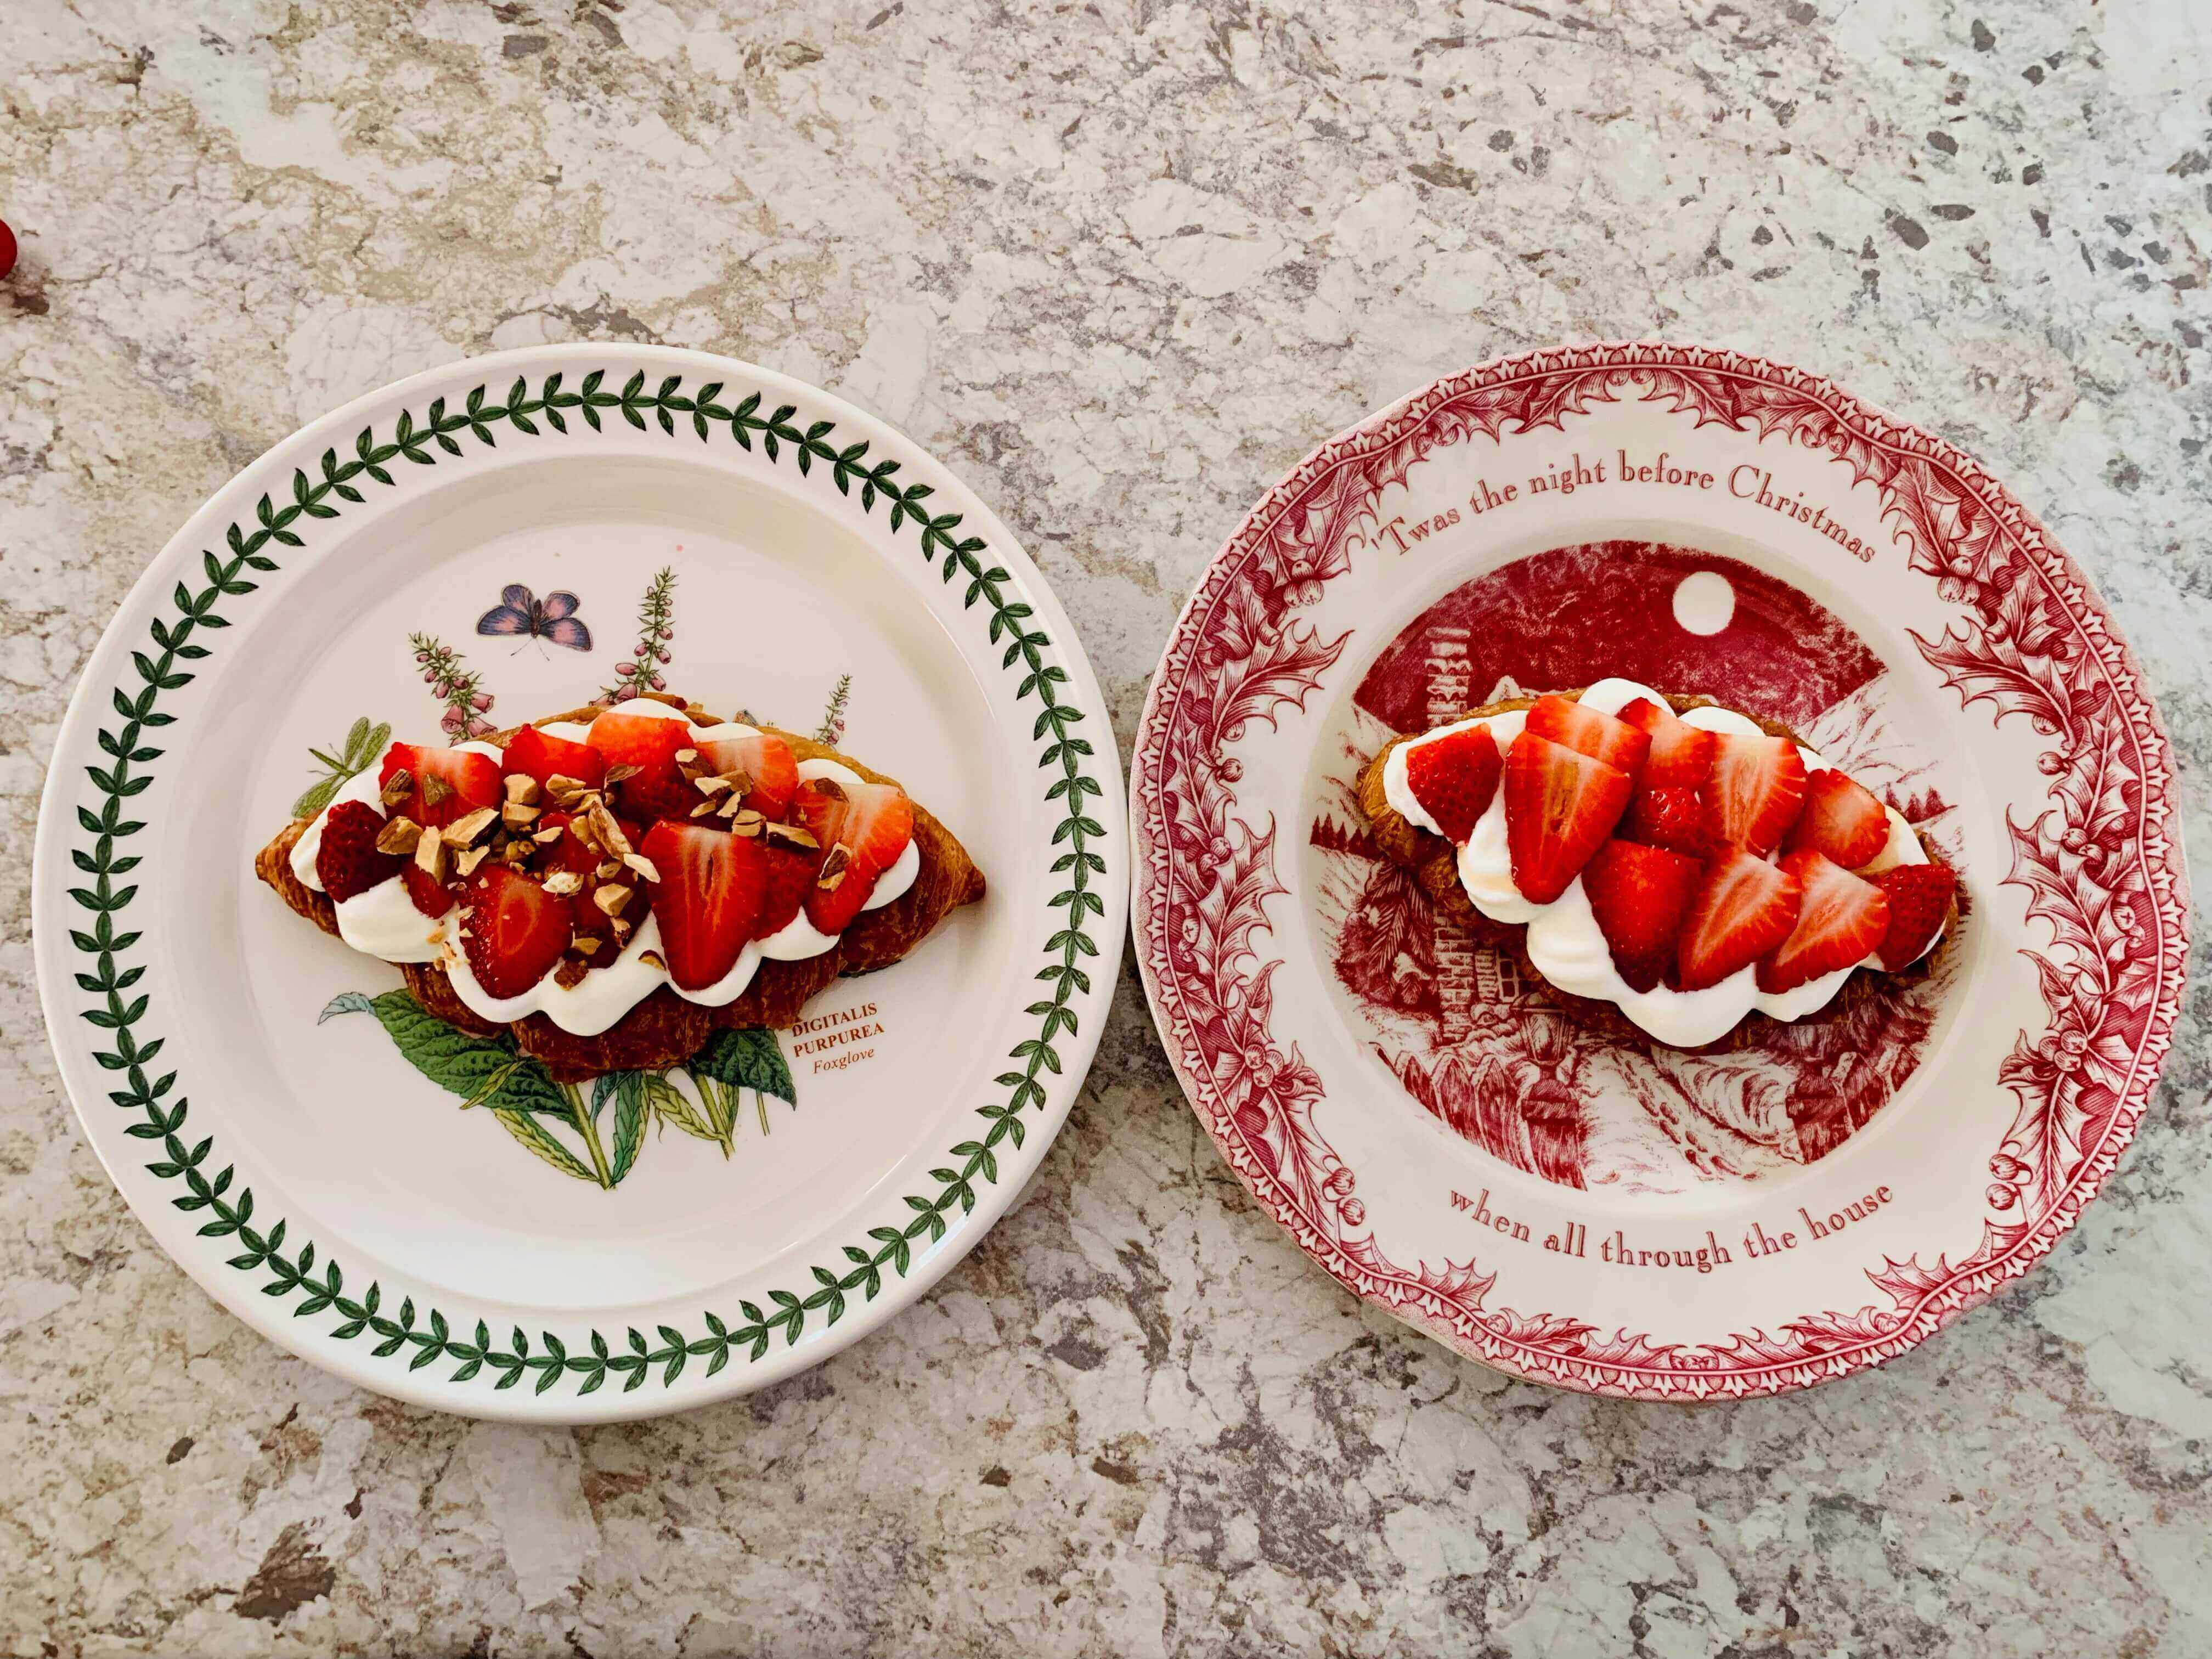 두개의-접시-위에-생크림-딸기-크로와상-파니니가-올려진-모습